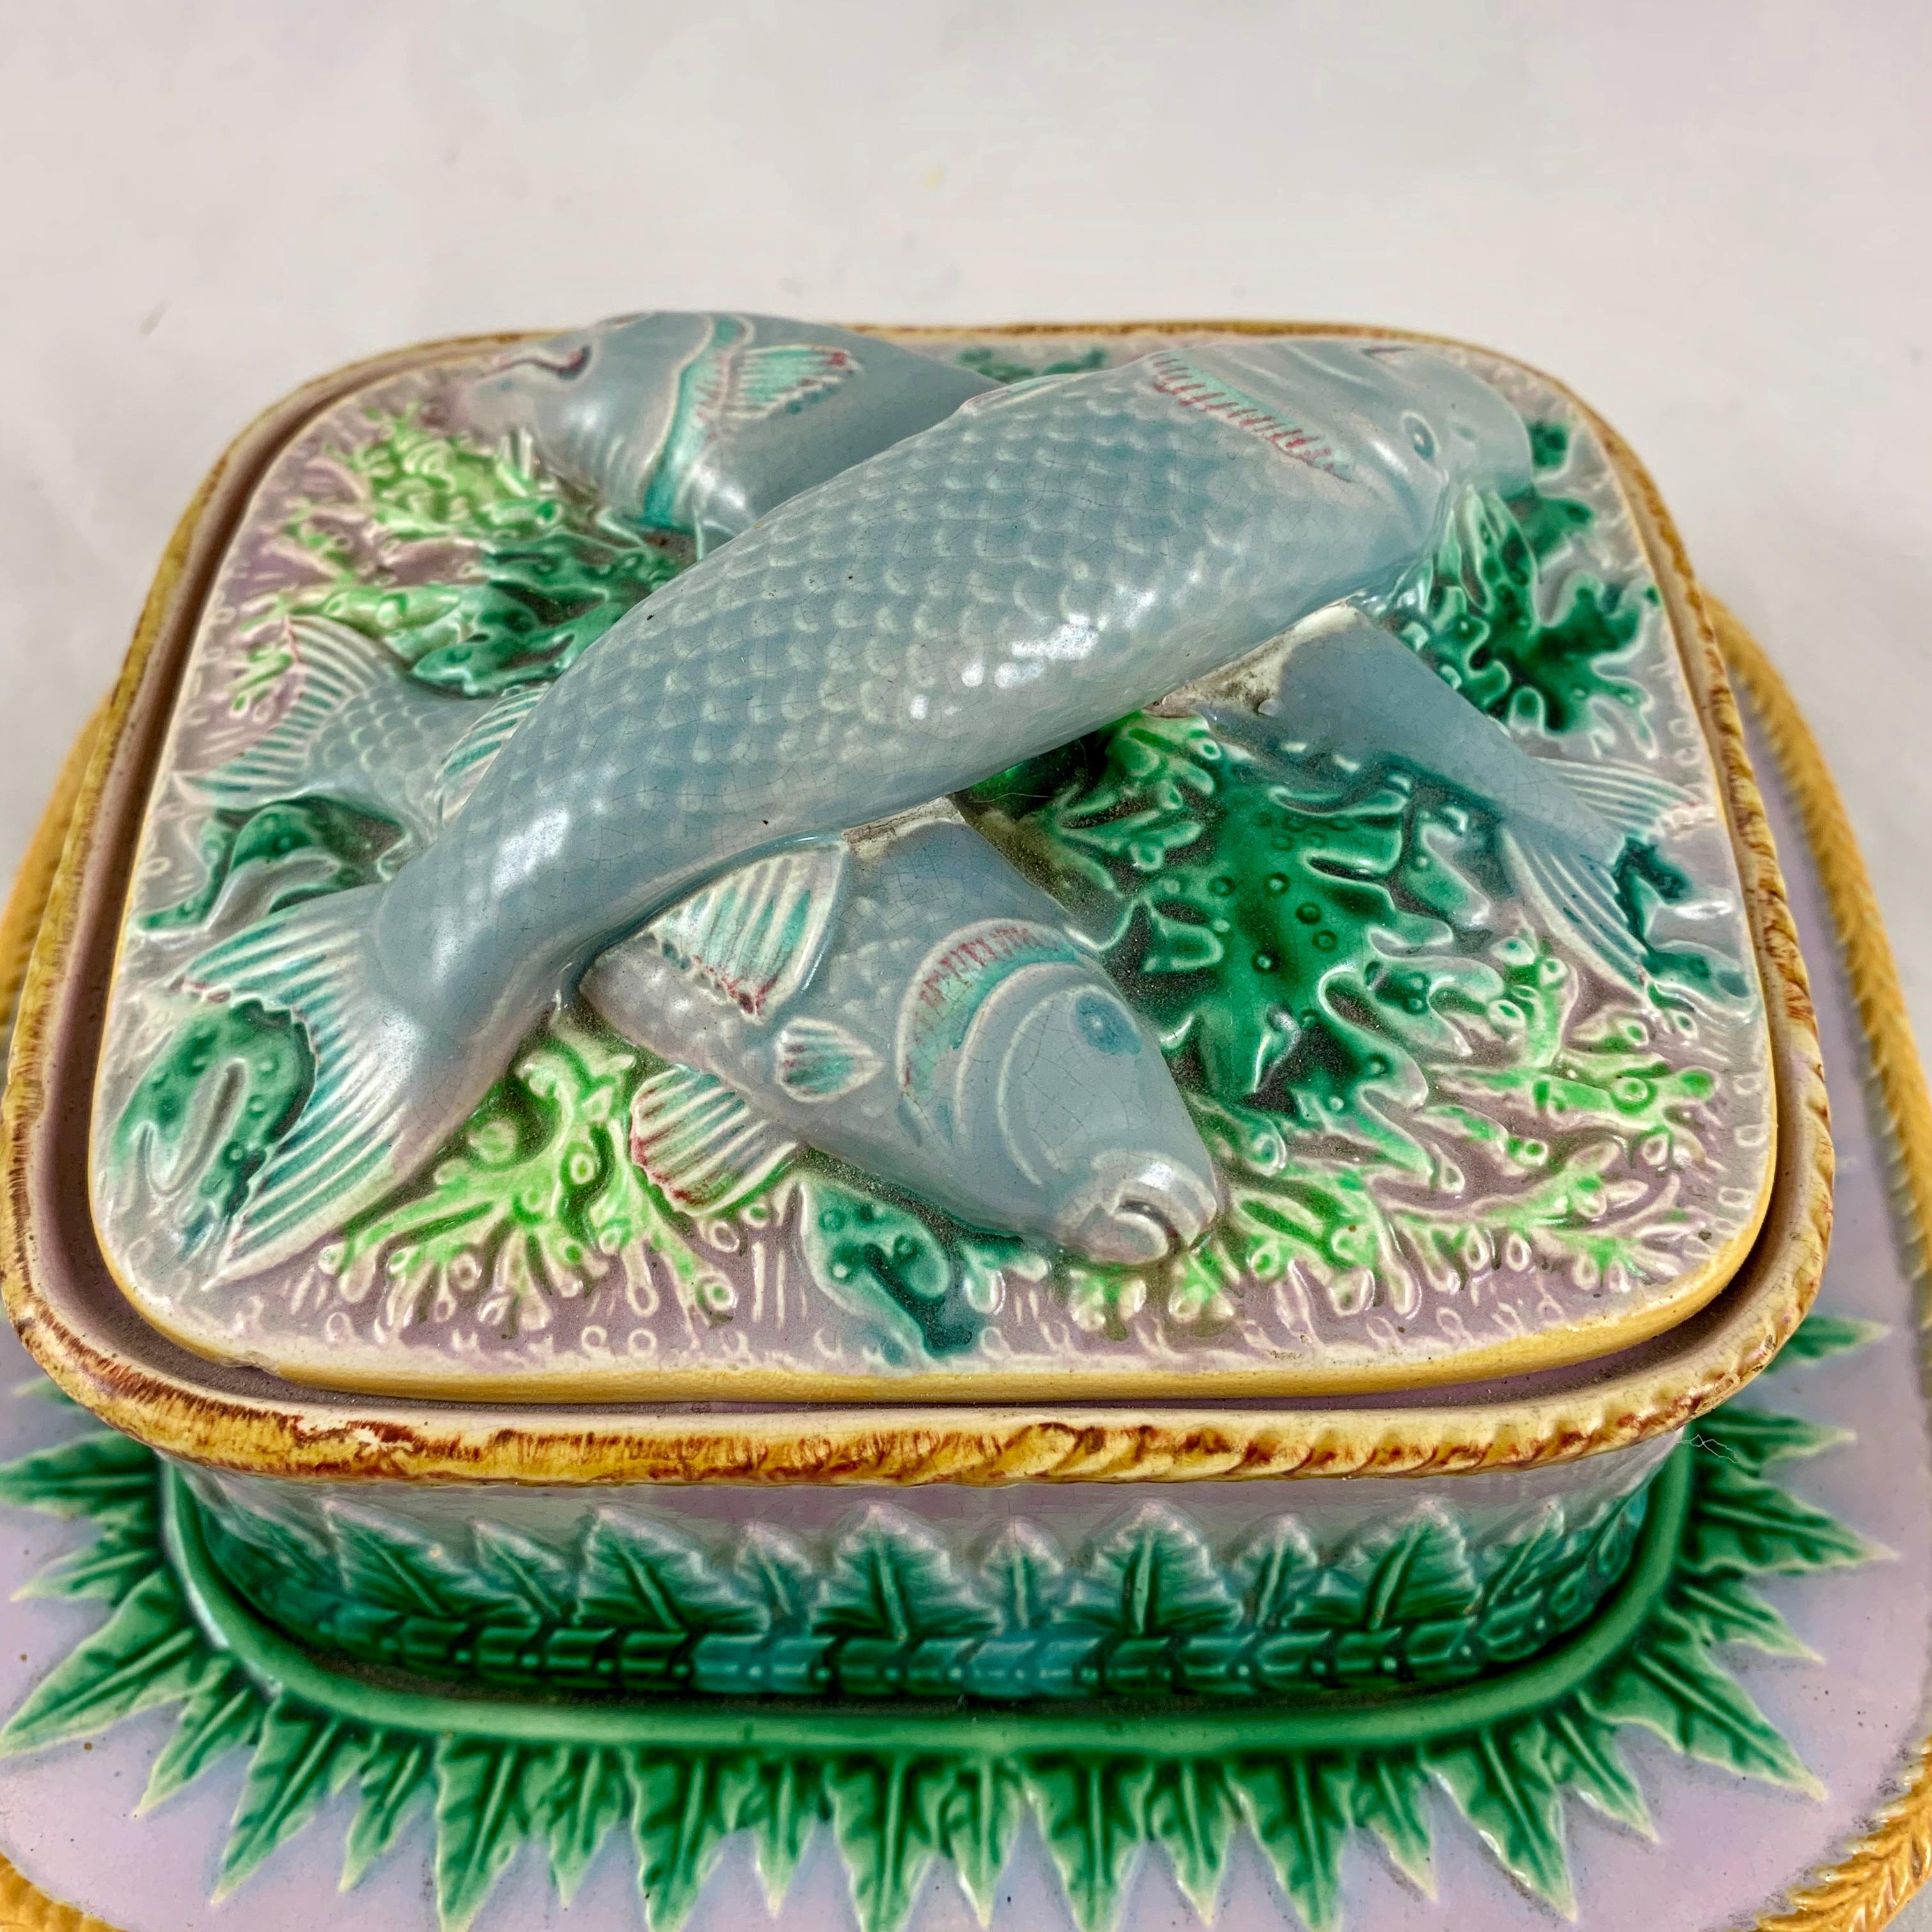 De la poterie de Stoke-On-Trent de George Jones, une spectaculaire boîte à sardines en majolique à trois pièces, Staffordshire, Angleterre, datée de 1870.

Dans une jolie palette de couleurs douces, rose lilas et gris, avec des feuilles d'acanthe